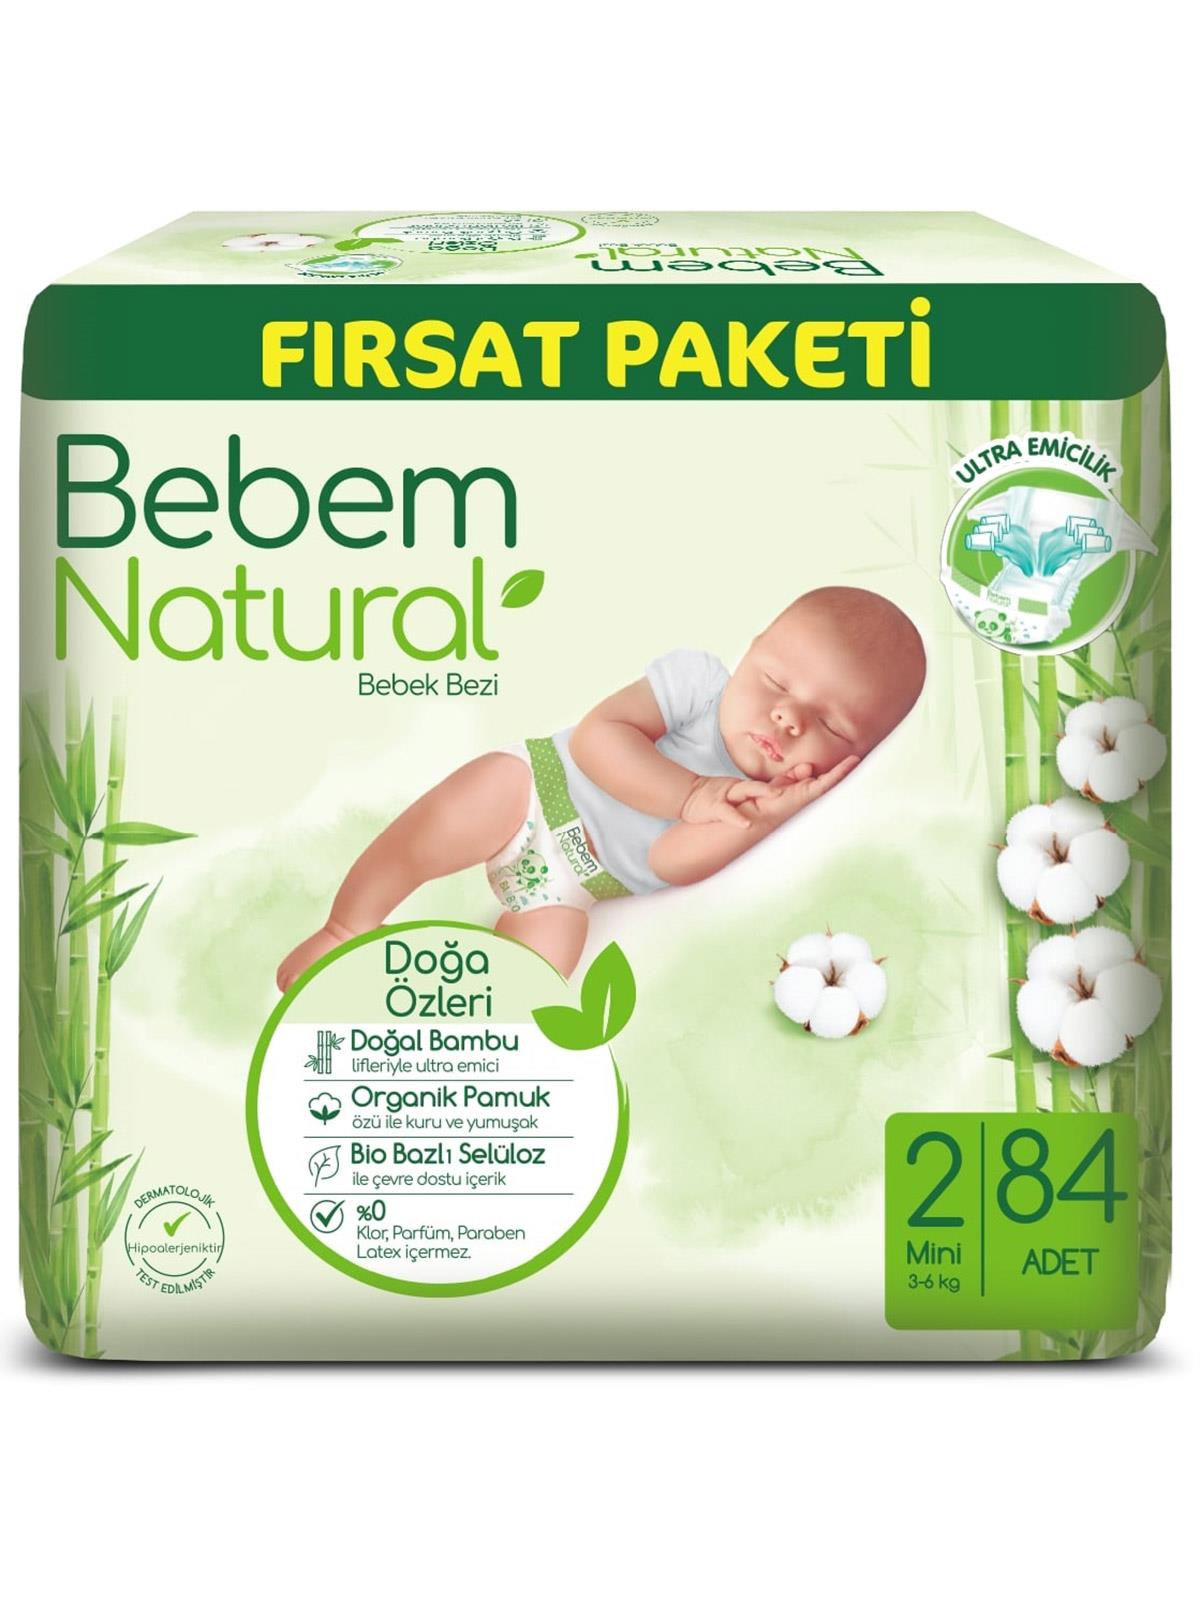 Bebem Natural Bebek Bezi Fırsat Paketi 2 Beden Mini 84 Adet